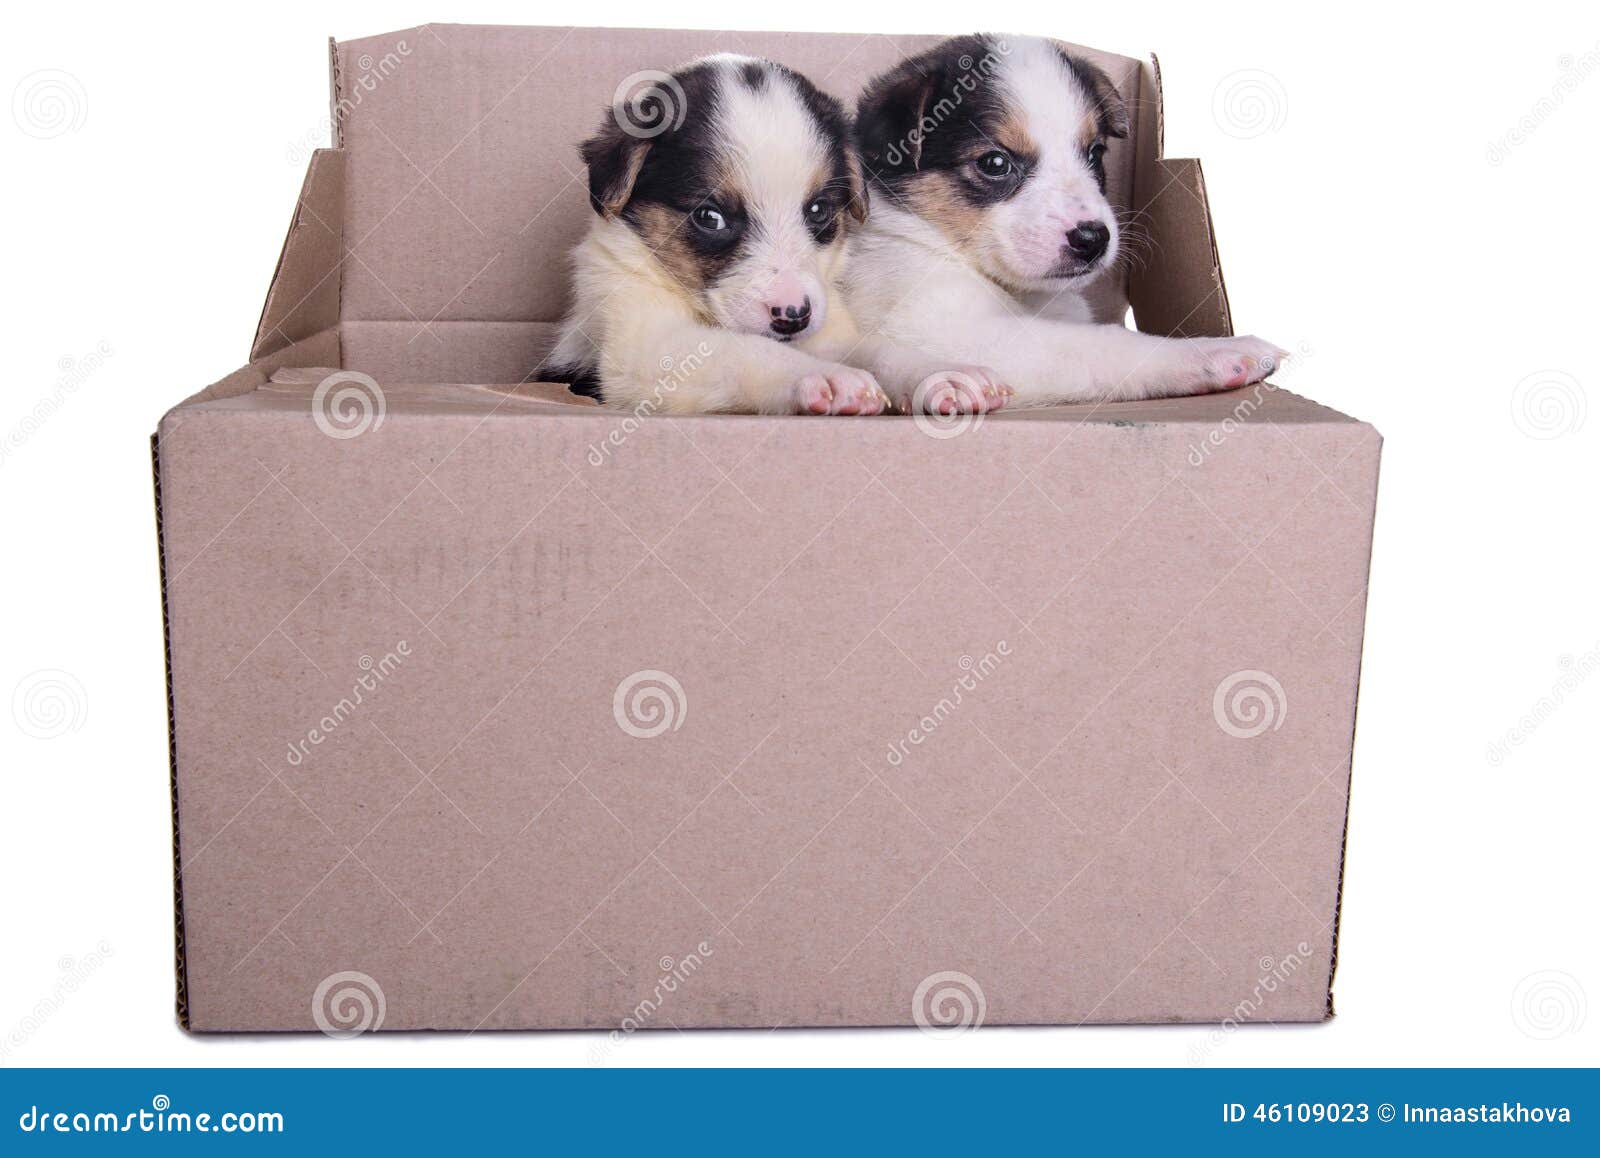 puppies mestizo in box